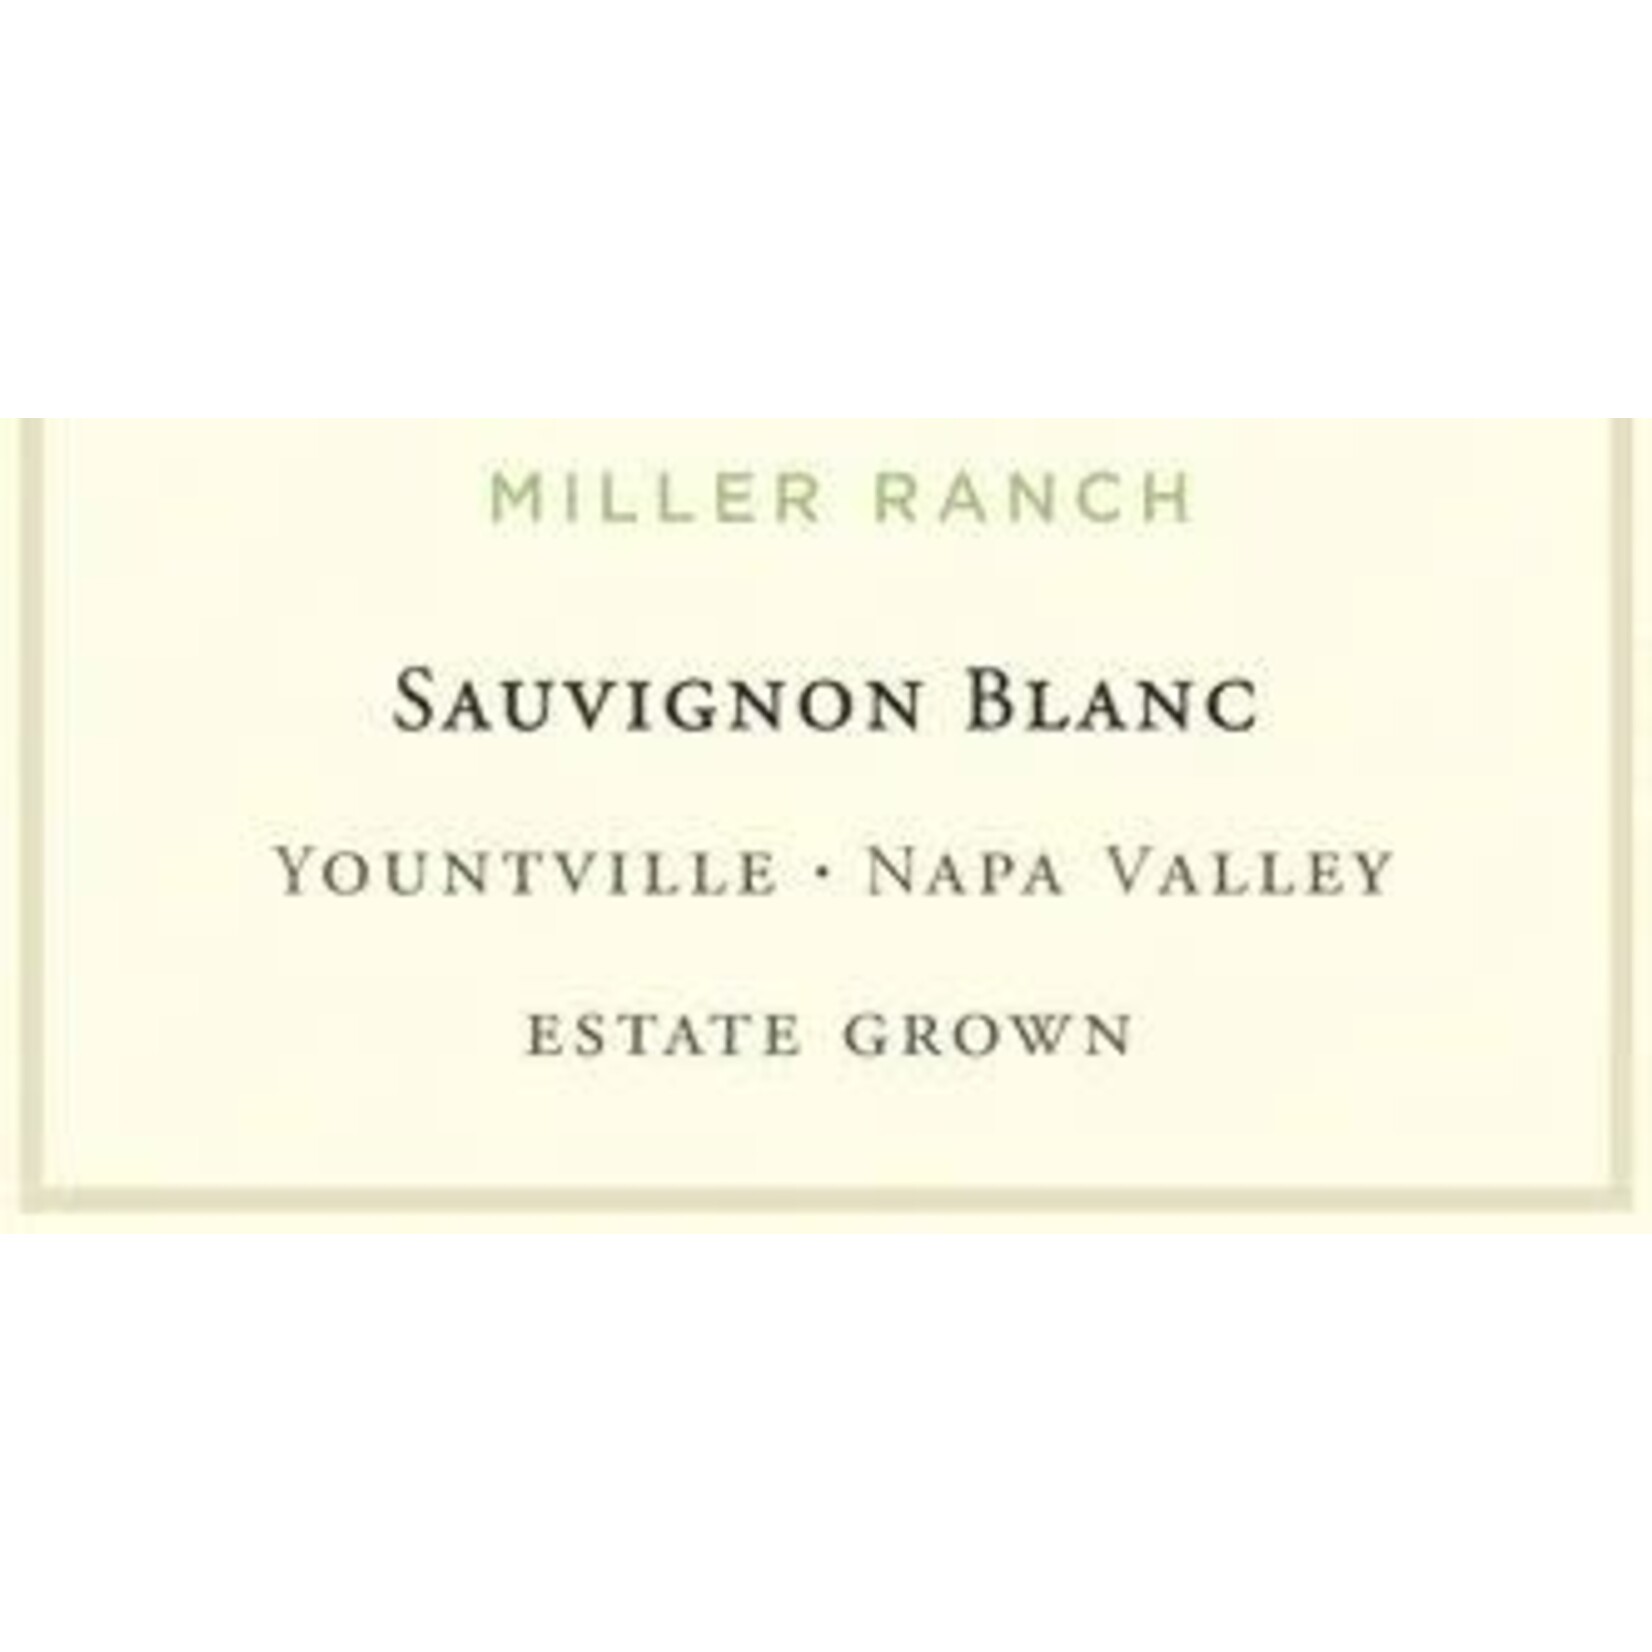 Silverado Miller Ranch Sauvignon Blanc 2020 Yountville Napa Valley California